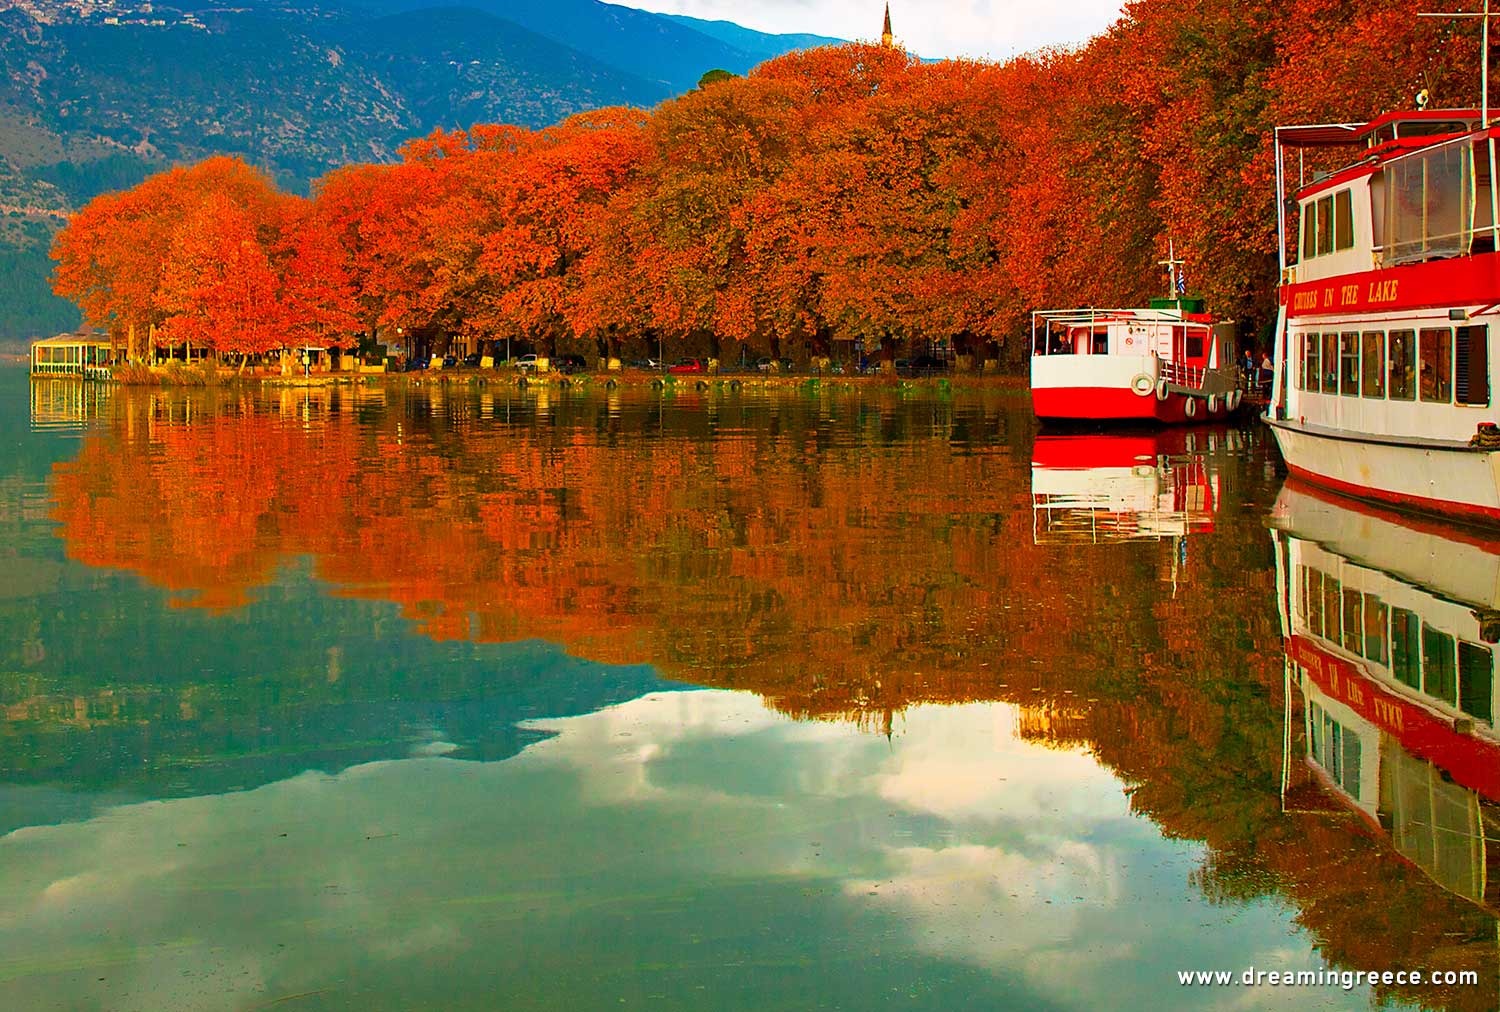 Holidays in Ioannina Epirus Greece